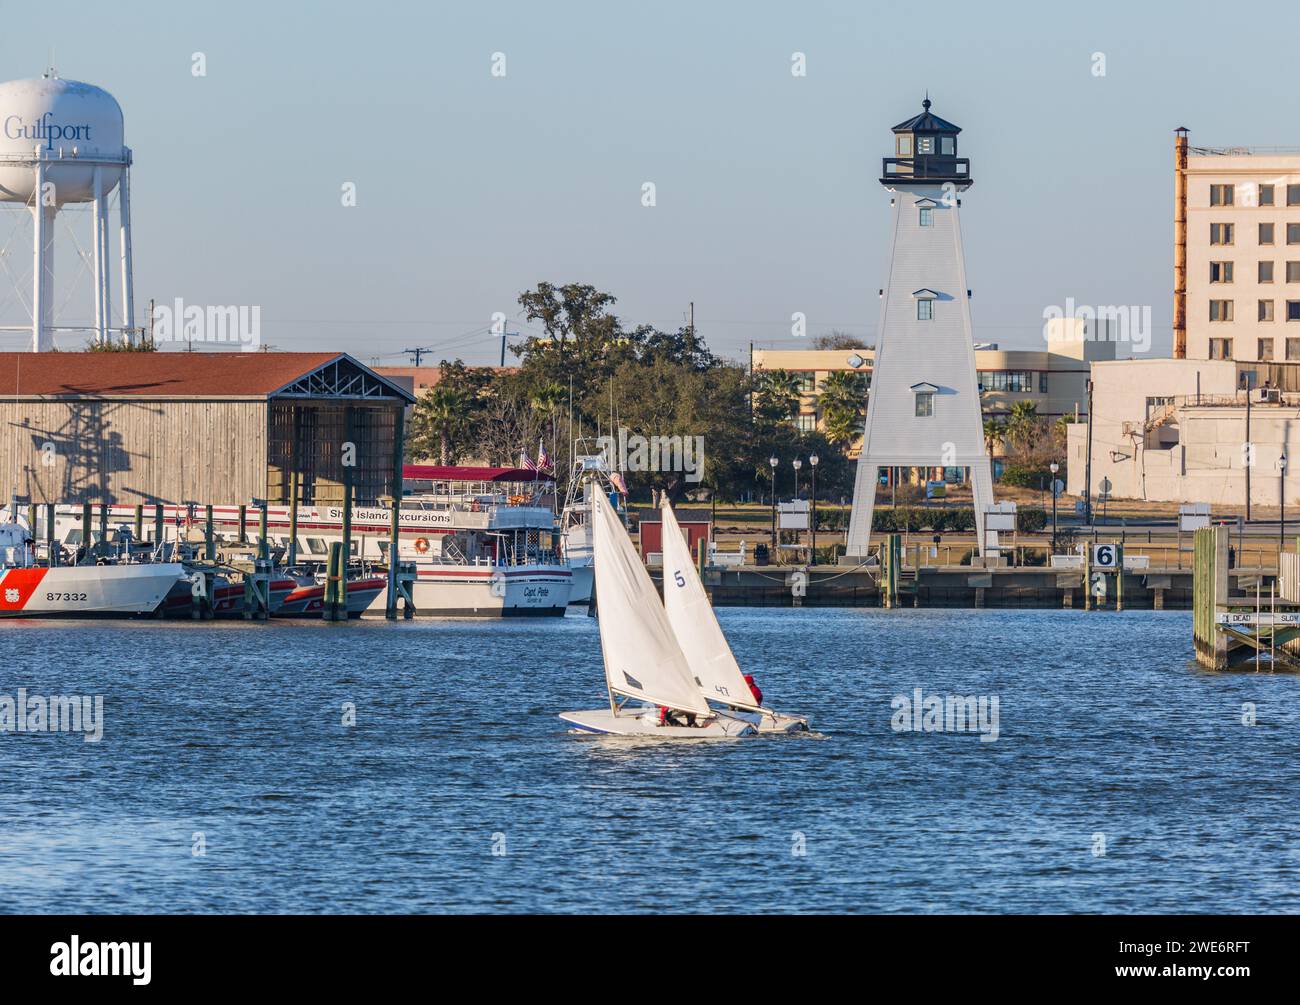 Zwei männliche Jugendliche segeln auf Laser-Segelbooten im Golf von Mexiko am Gufport Harbor in Gulfport, Mississippi Stockfoto